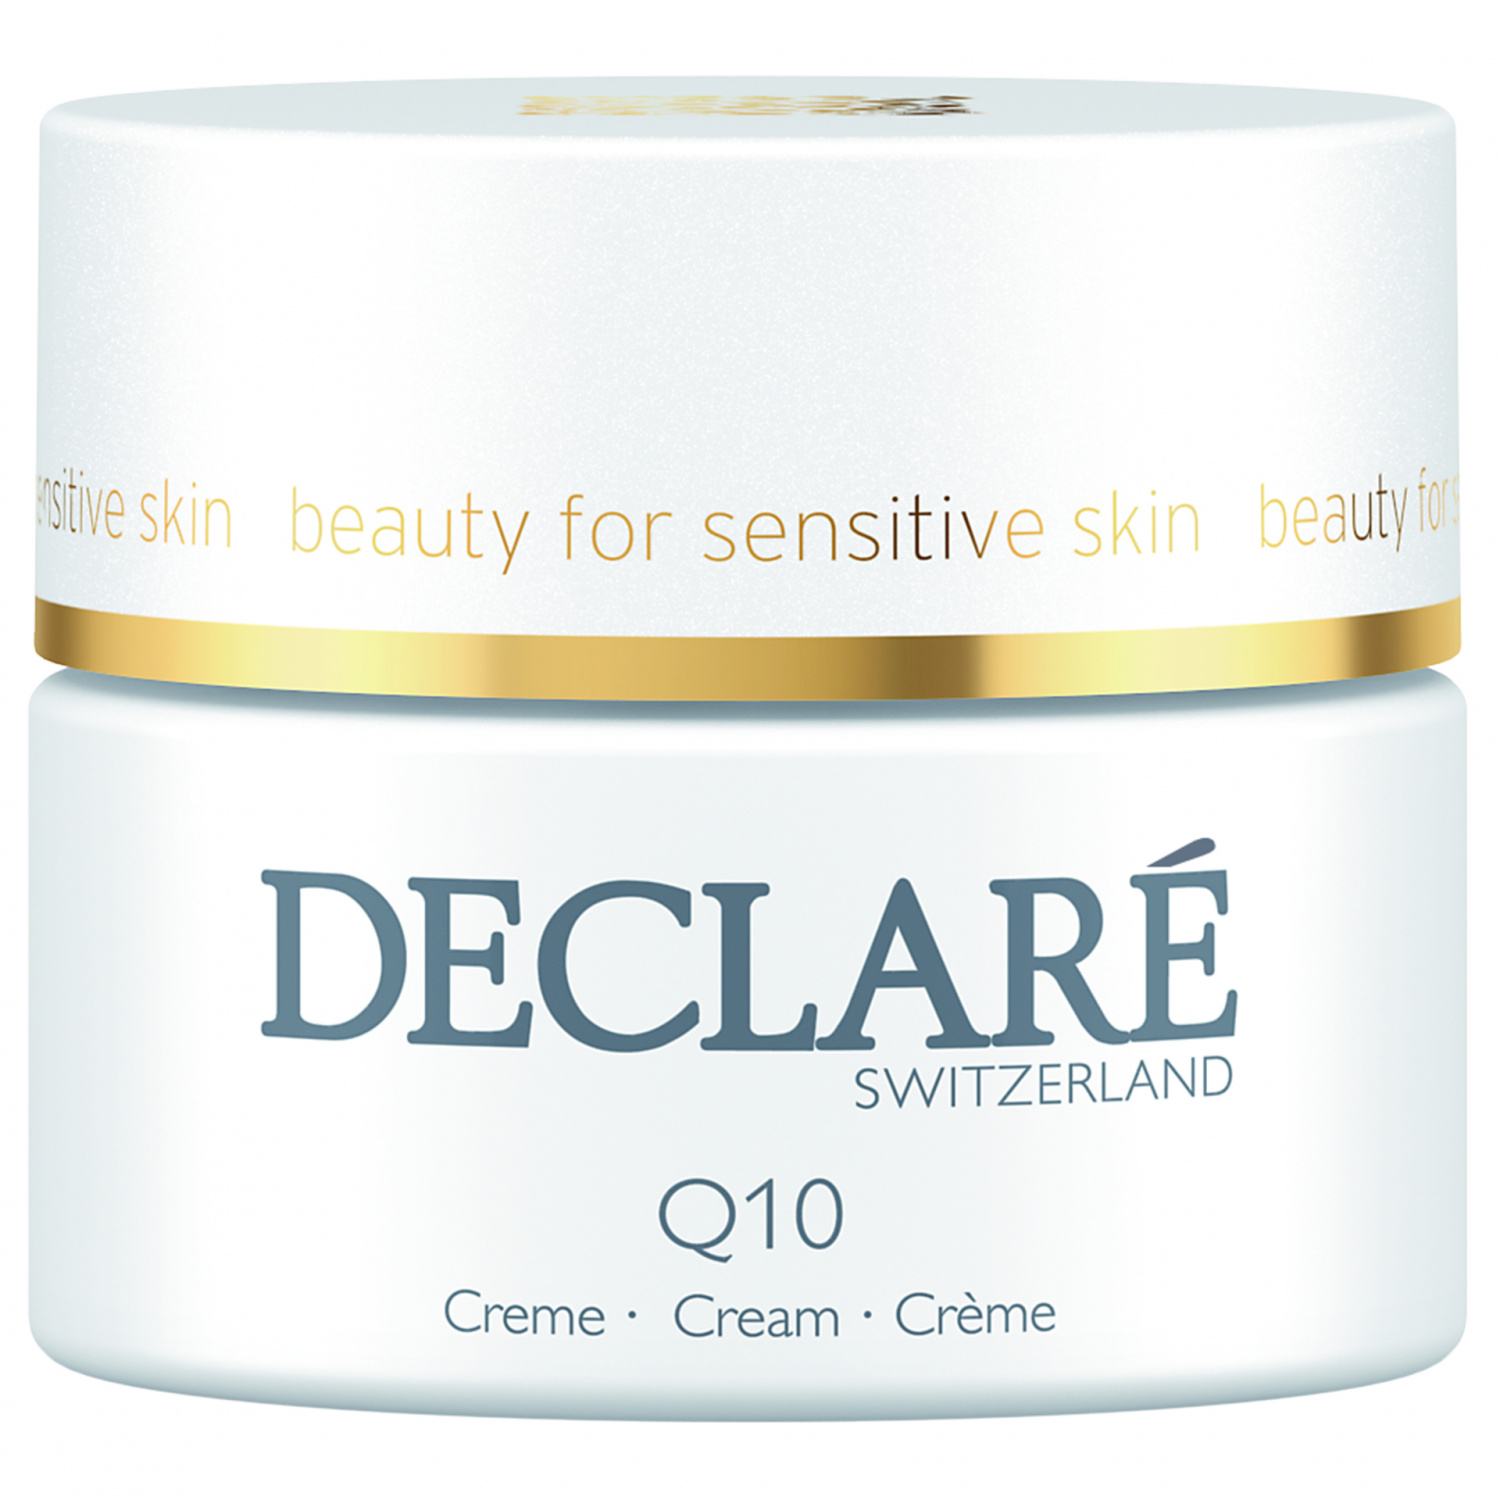 Declare Q10 Age Control Cream 50ml. - интернет-магазин профессиональной косметики Spadream, изображение 30754